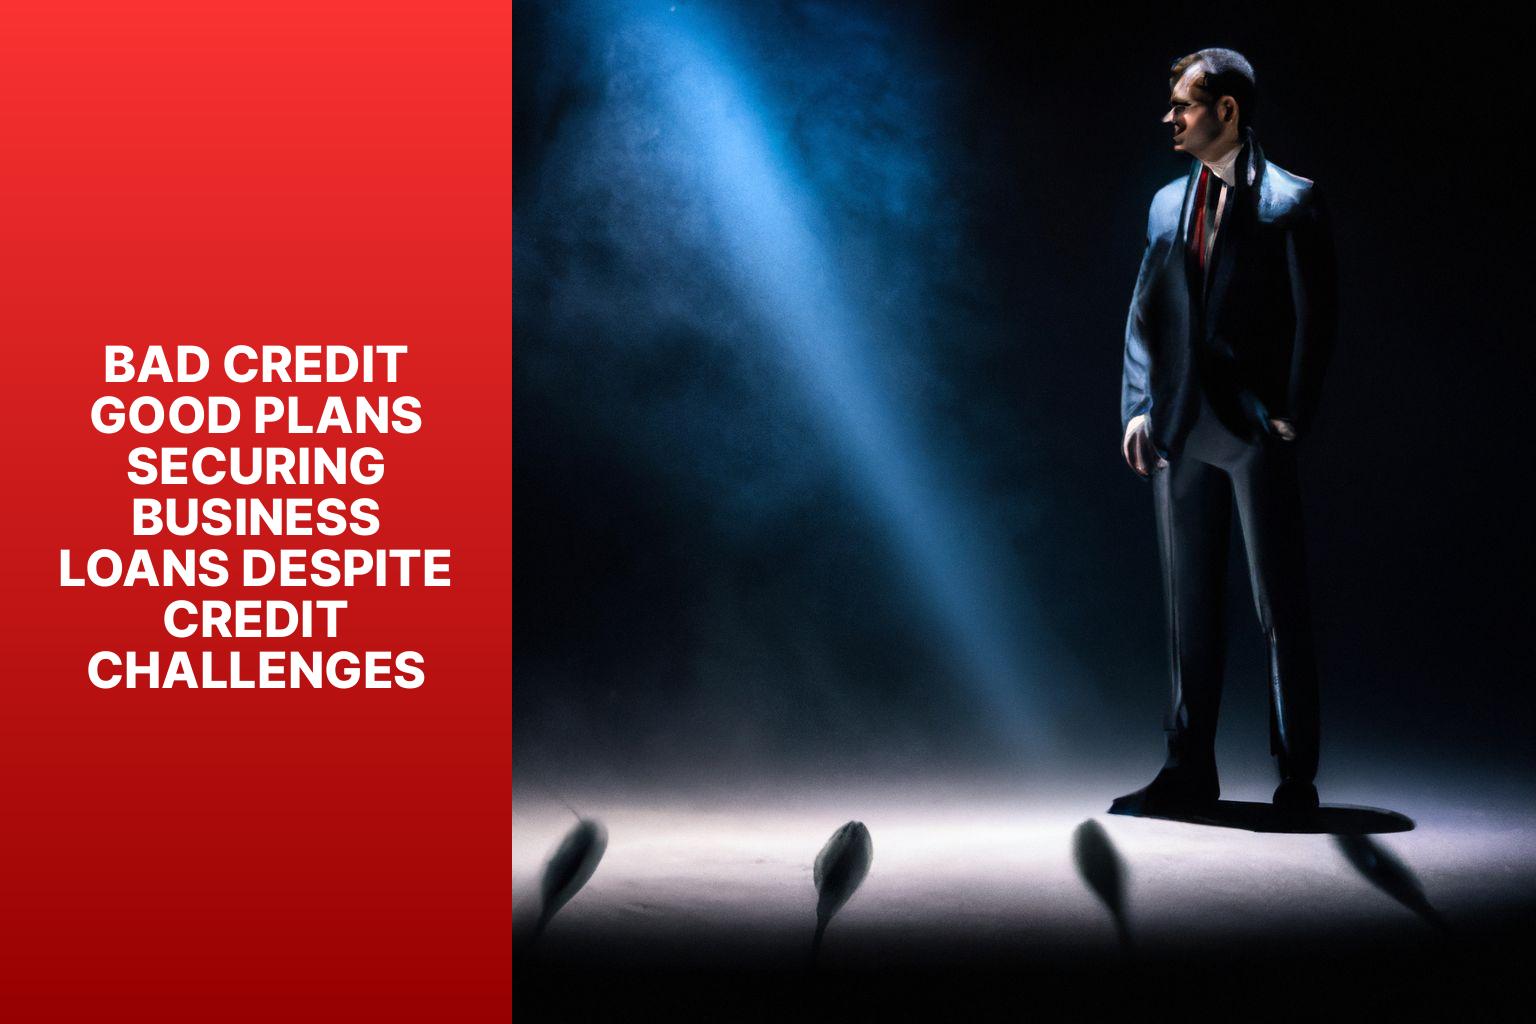 Bad Credit Good Plans Securing Business Loans Despite Credit Challenges